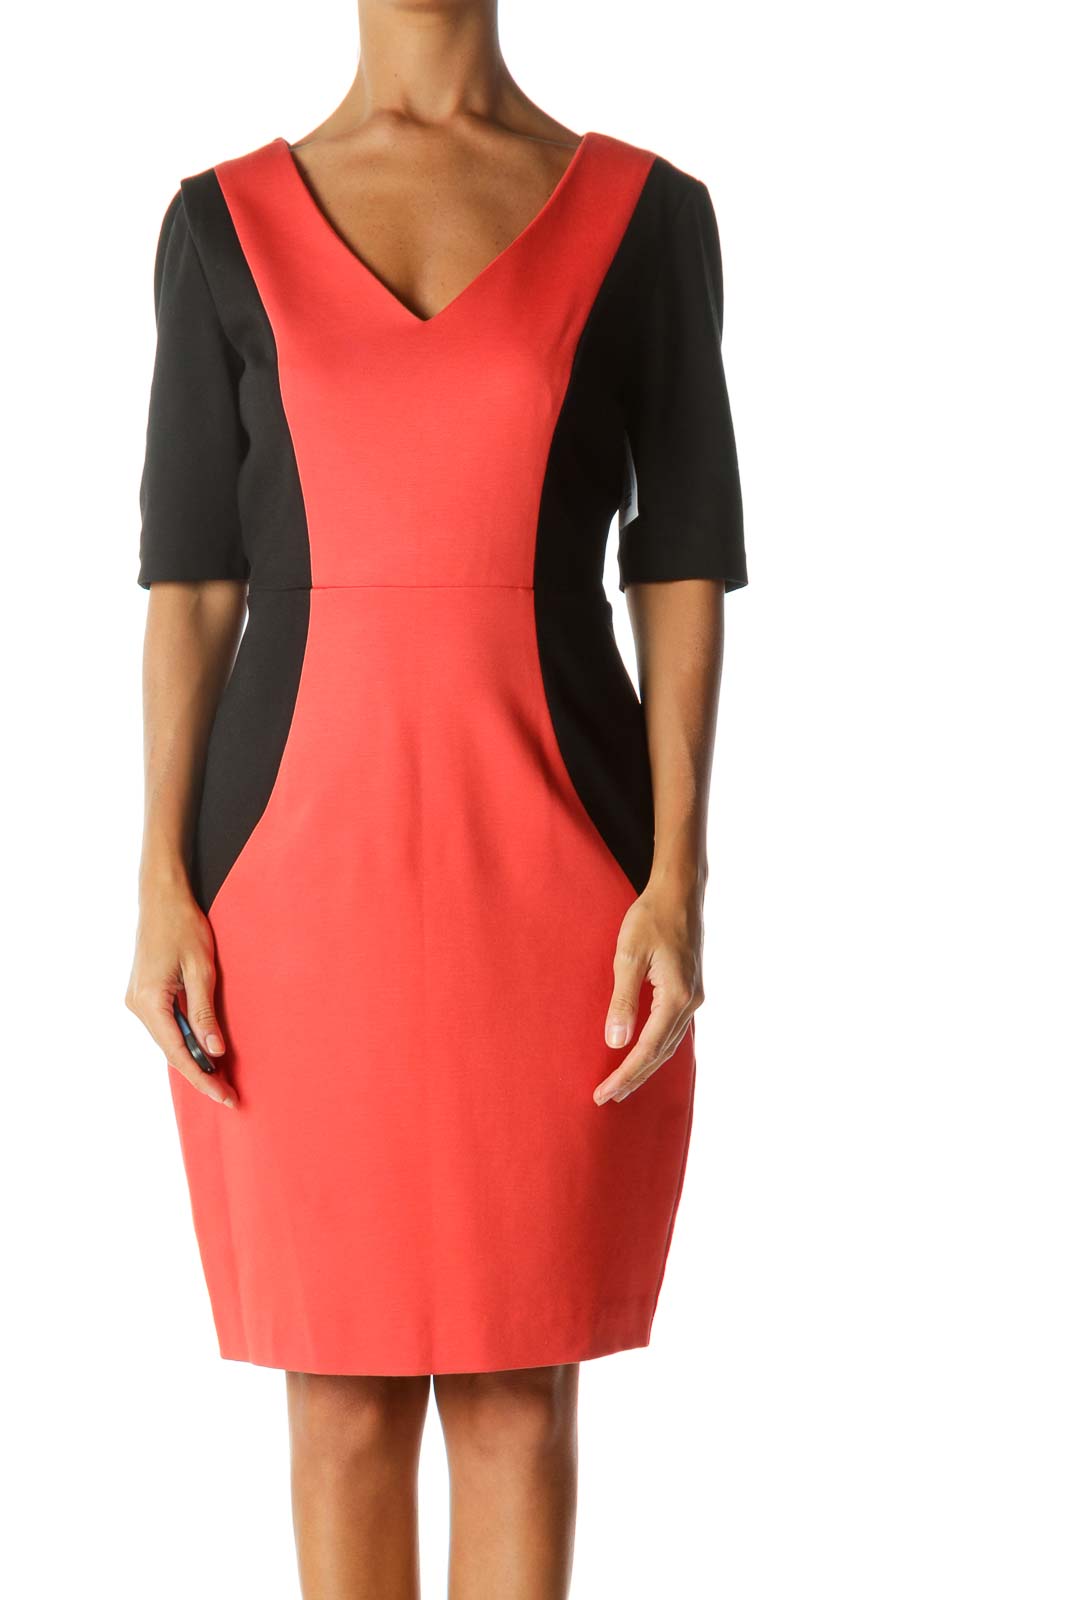 Orange & Black Color-Block Short-Sleeve V-Neck Work Dress Front